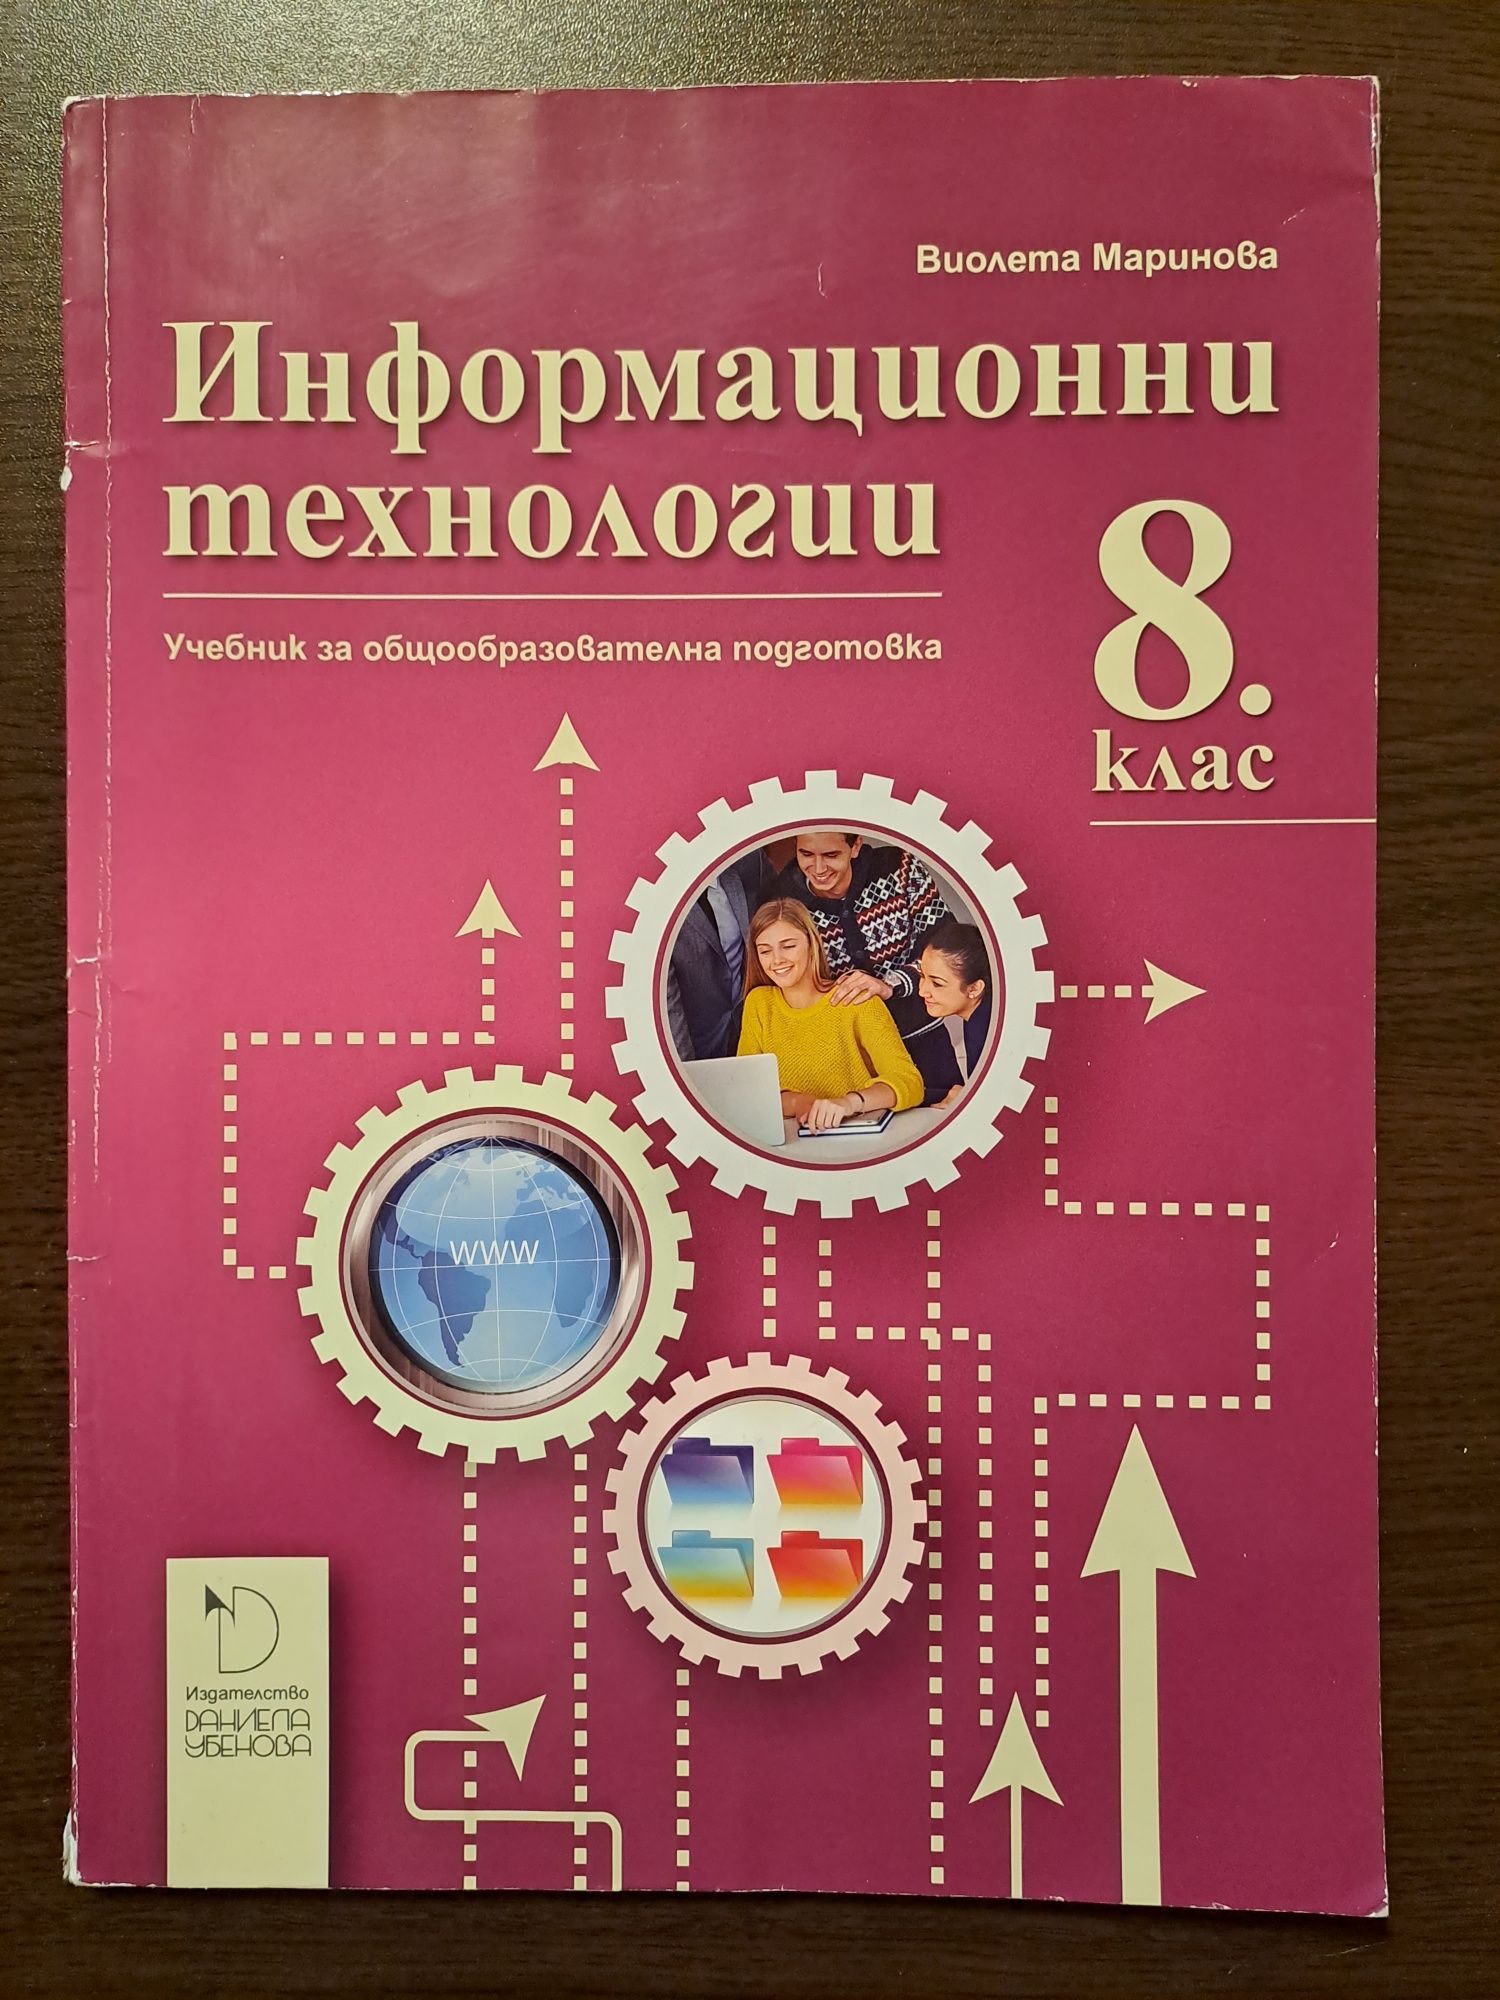 Учебник по информационни технологии за 8ми клас